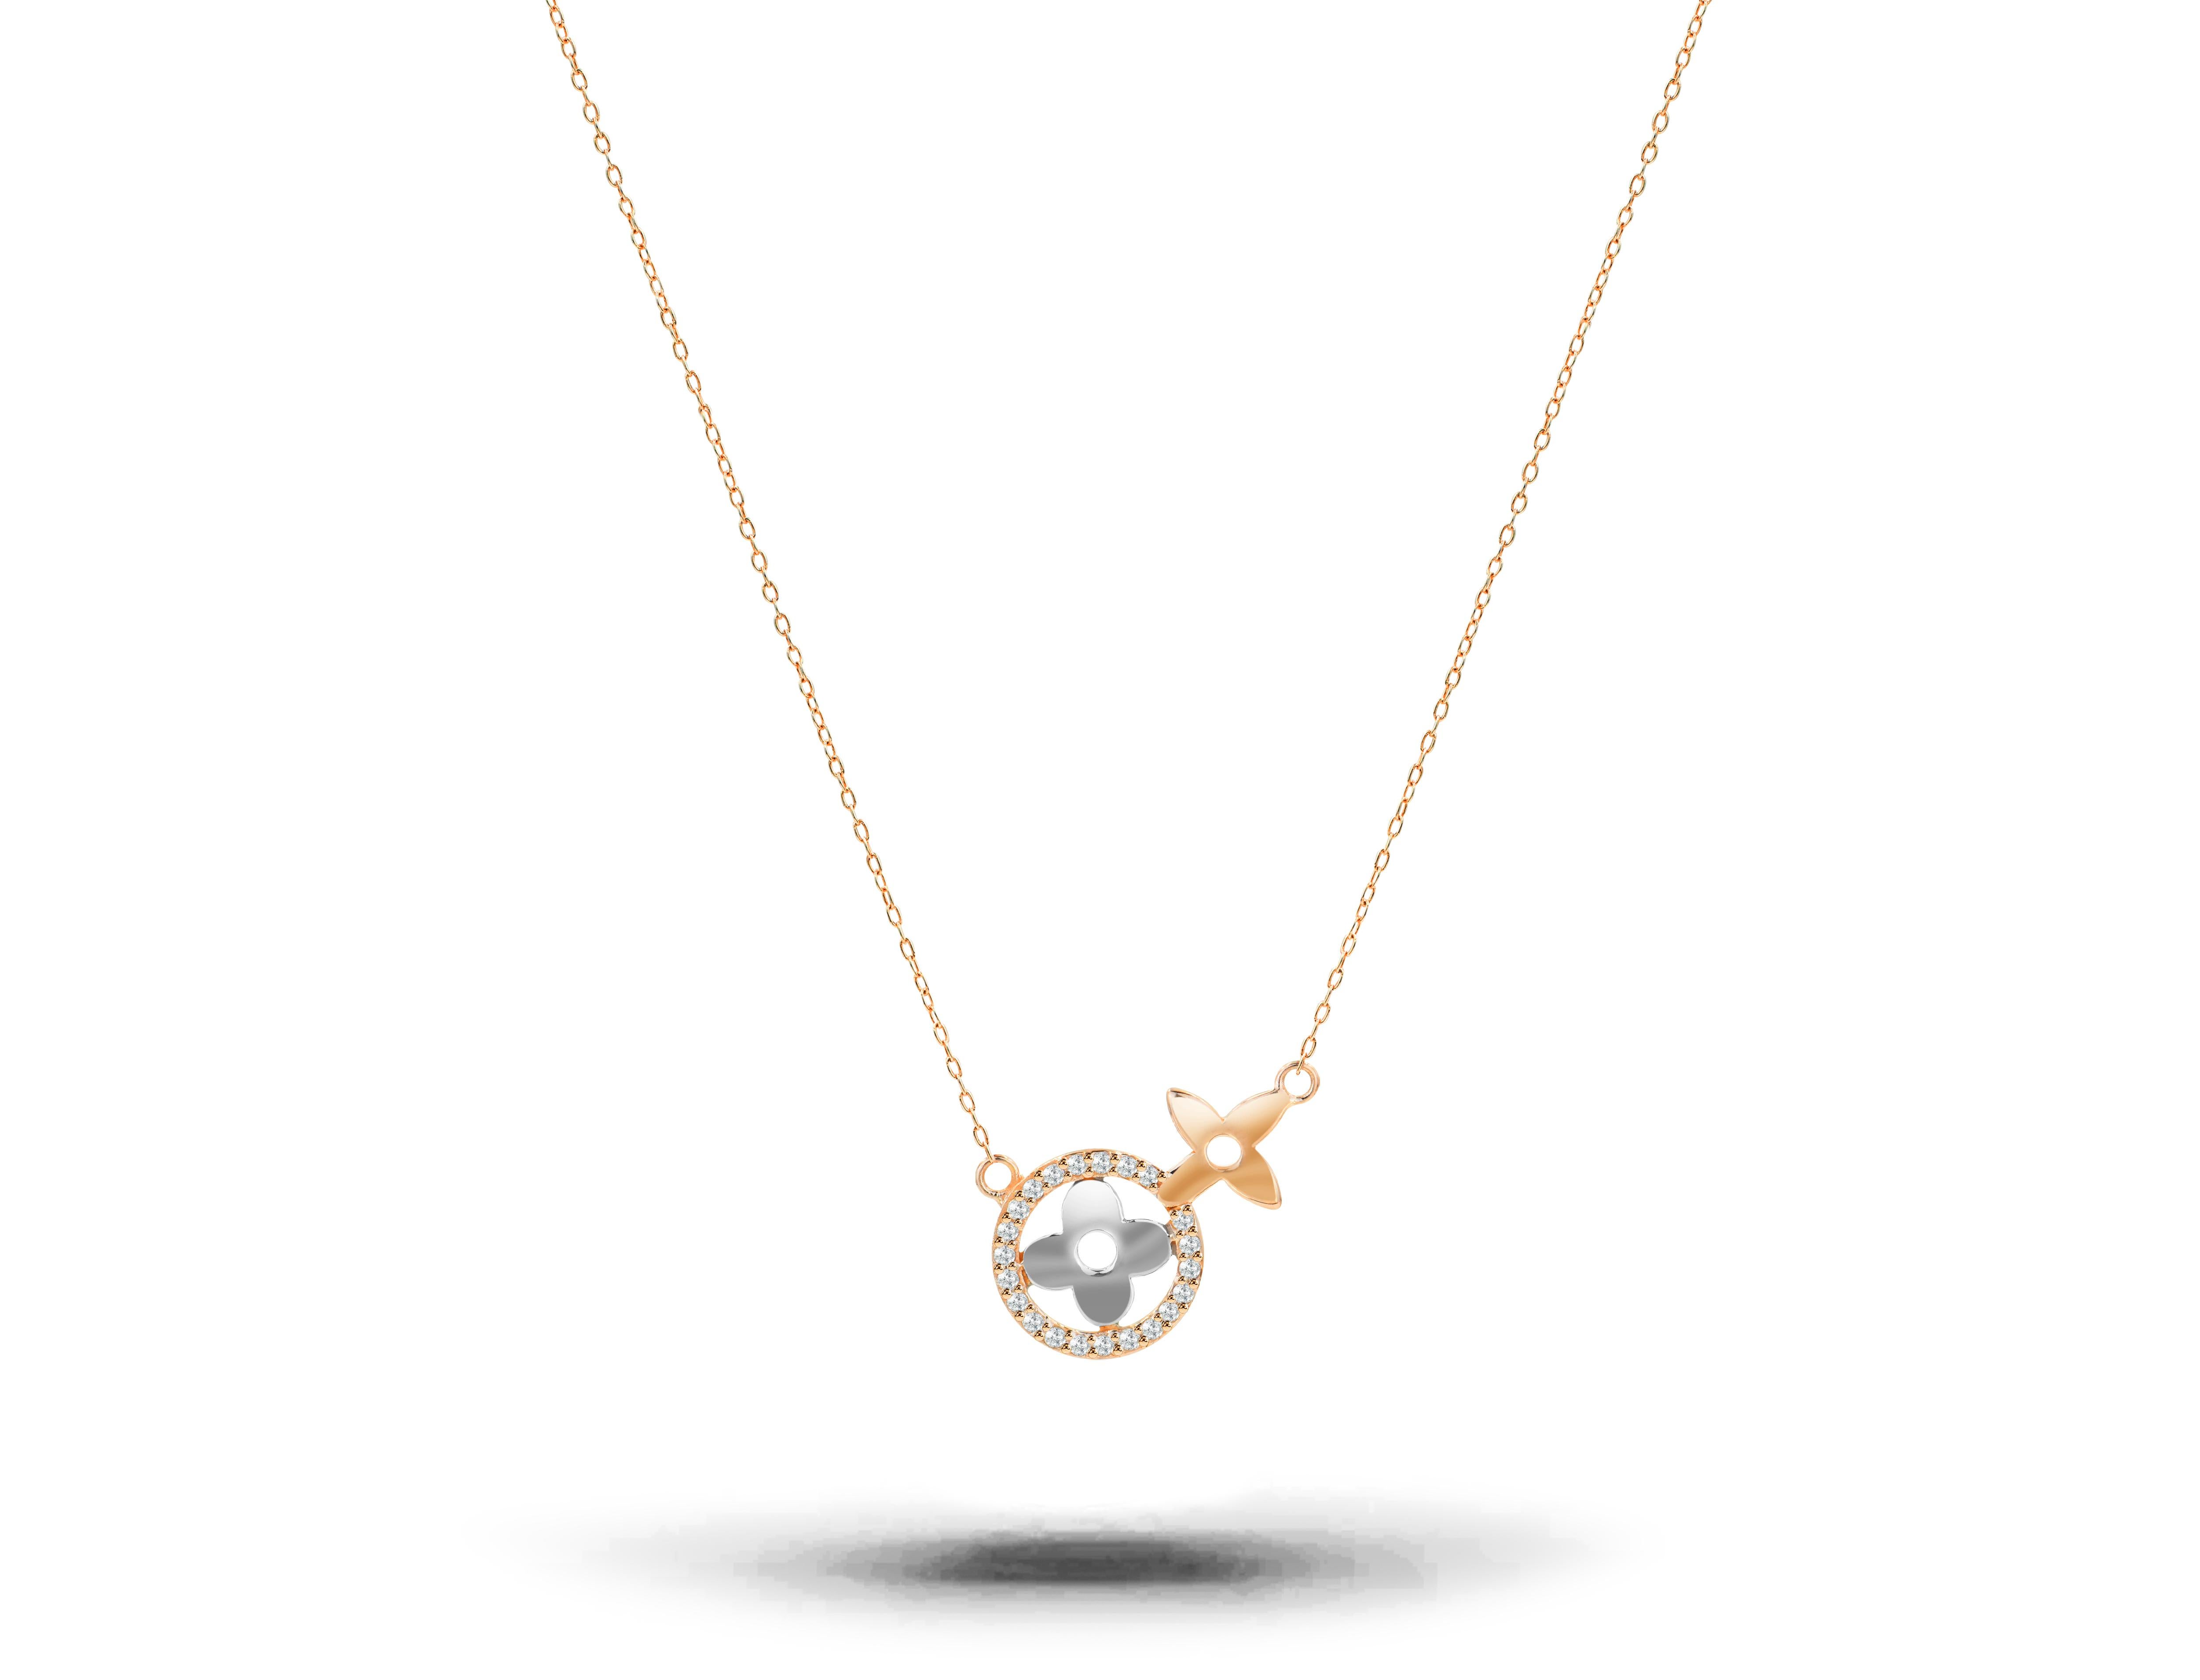 Le collier trèfle à diamants pavés est fabriqué en or massif 18 carats.
Disponible en trois couleurs d'or :  Or rose / Or jaune / Or blanc.

Délicat collier de trèfles porte-bonheur avec diamant naturel. Ce collier minimaliste moderne est un cadeau